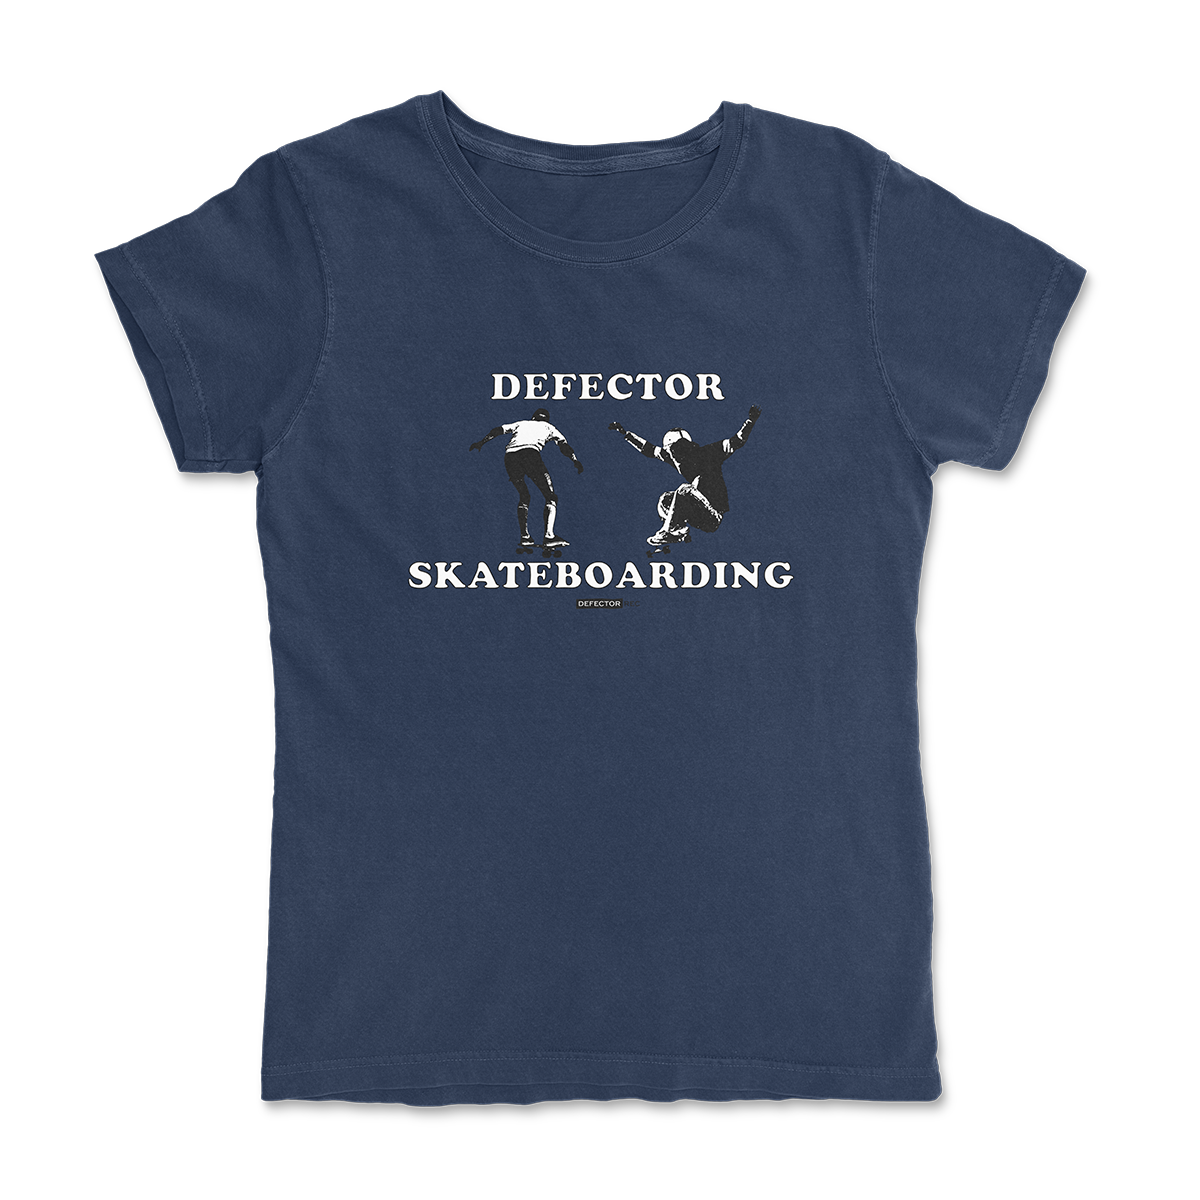 Defector shirt that says “DEFECTOR SKATEBOARDING.” Features clip art of skateboarding. Blue shirt in ‘femme’ cut.